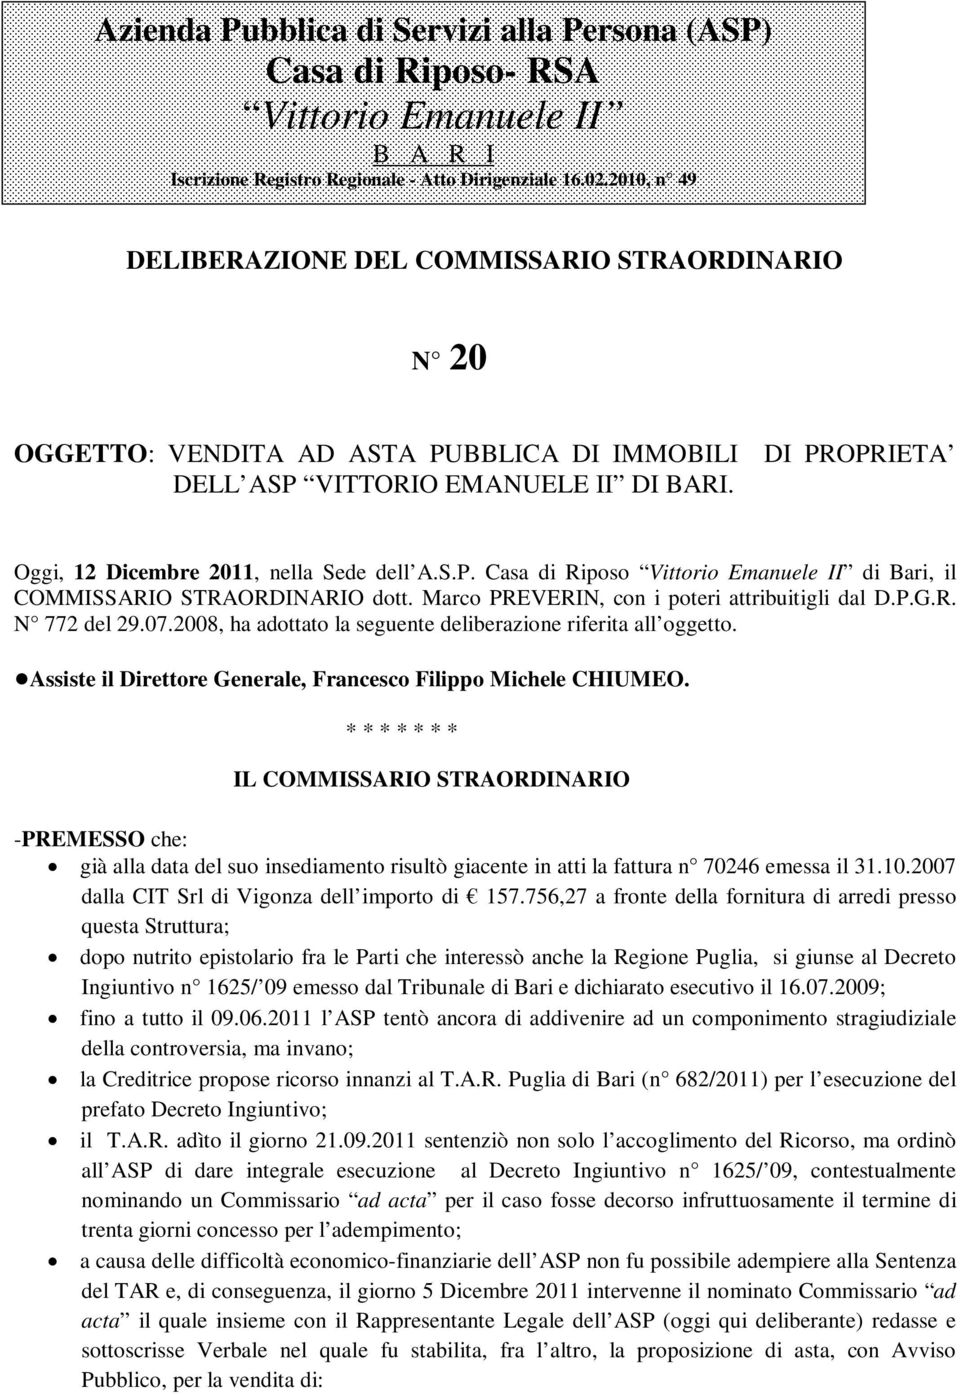 S.P. Casa di Riposo Vittorio Emanuele II di Bari, il COMMISSARIO STRAORDINARIO dott. Marco PREVERIN, con i poteri attribuitigli dal D.P.G.R. N 772 del 29.07.